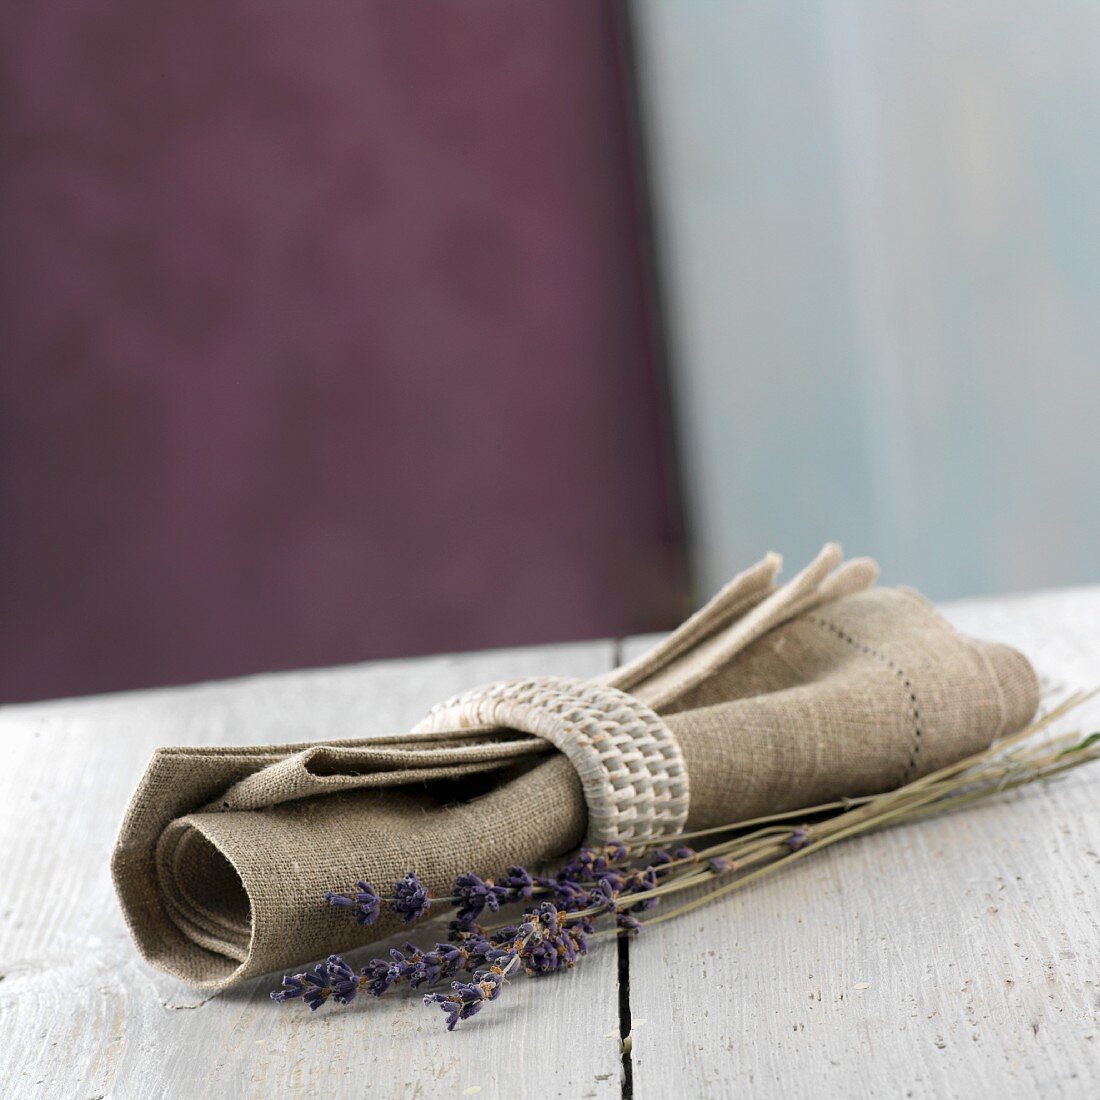 Stoffserviette mit Serviettenring und Lavendelblüten aus der Provence